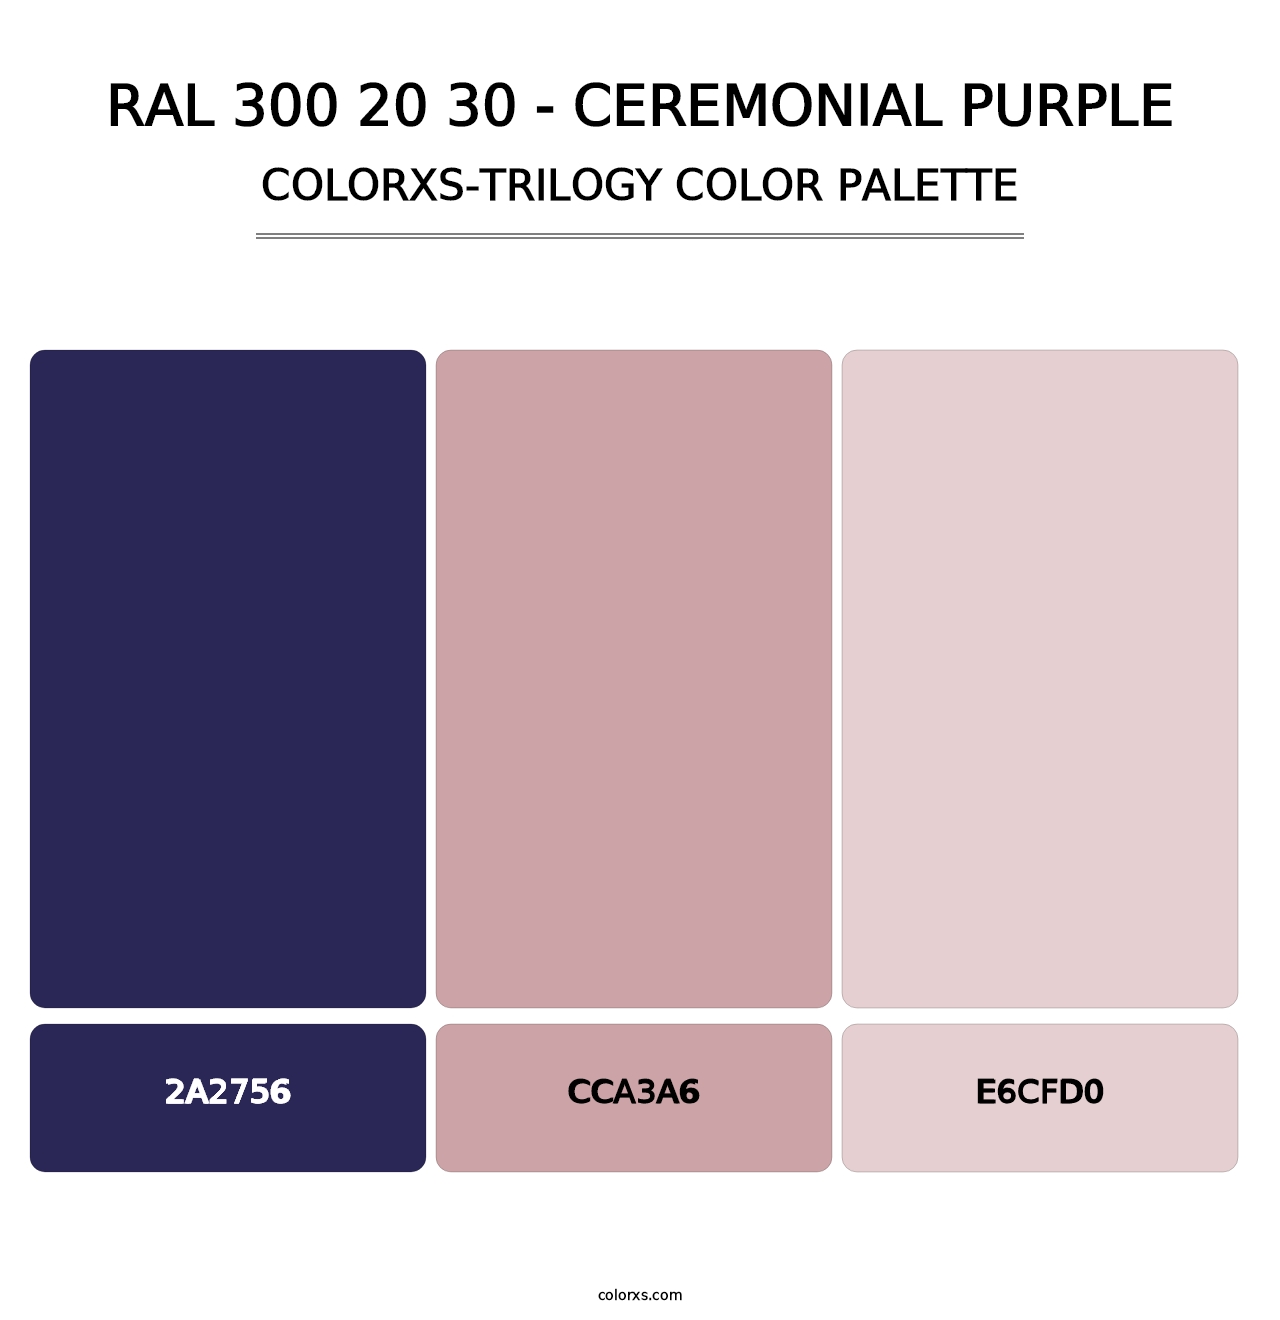 RAL 300 20 30 - Ceremonial Purple - Colorxs Trilogy Palette